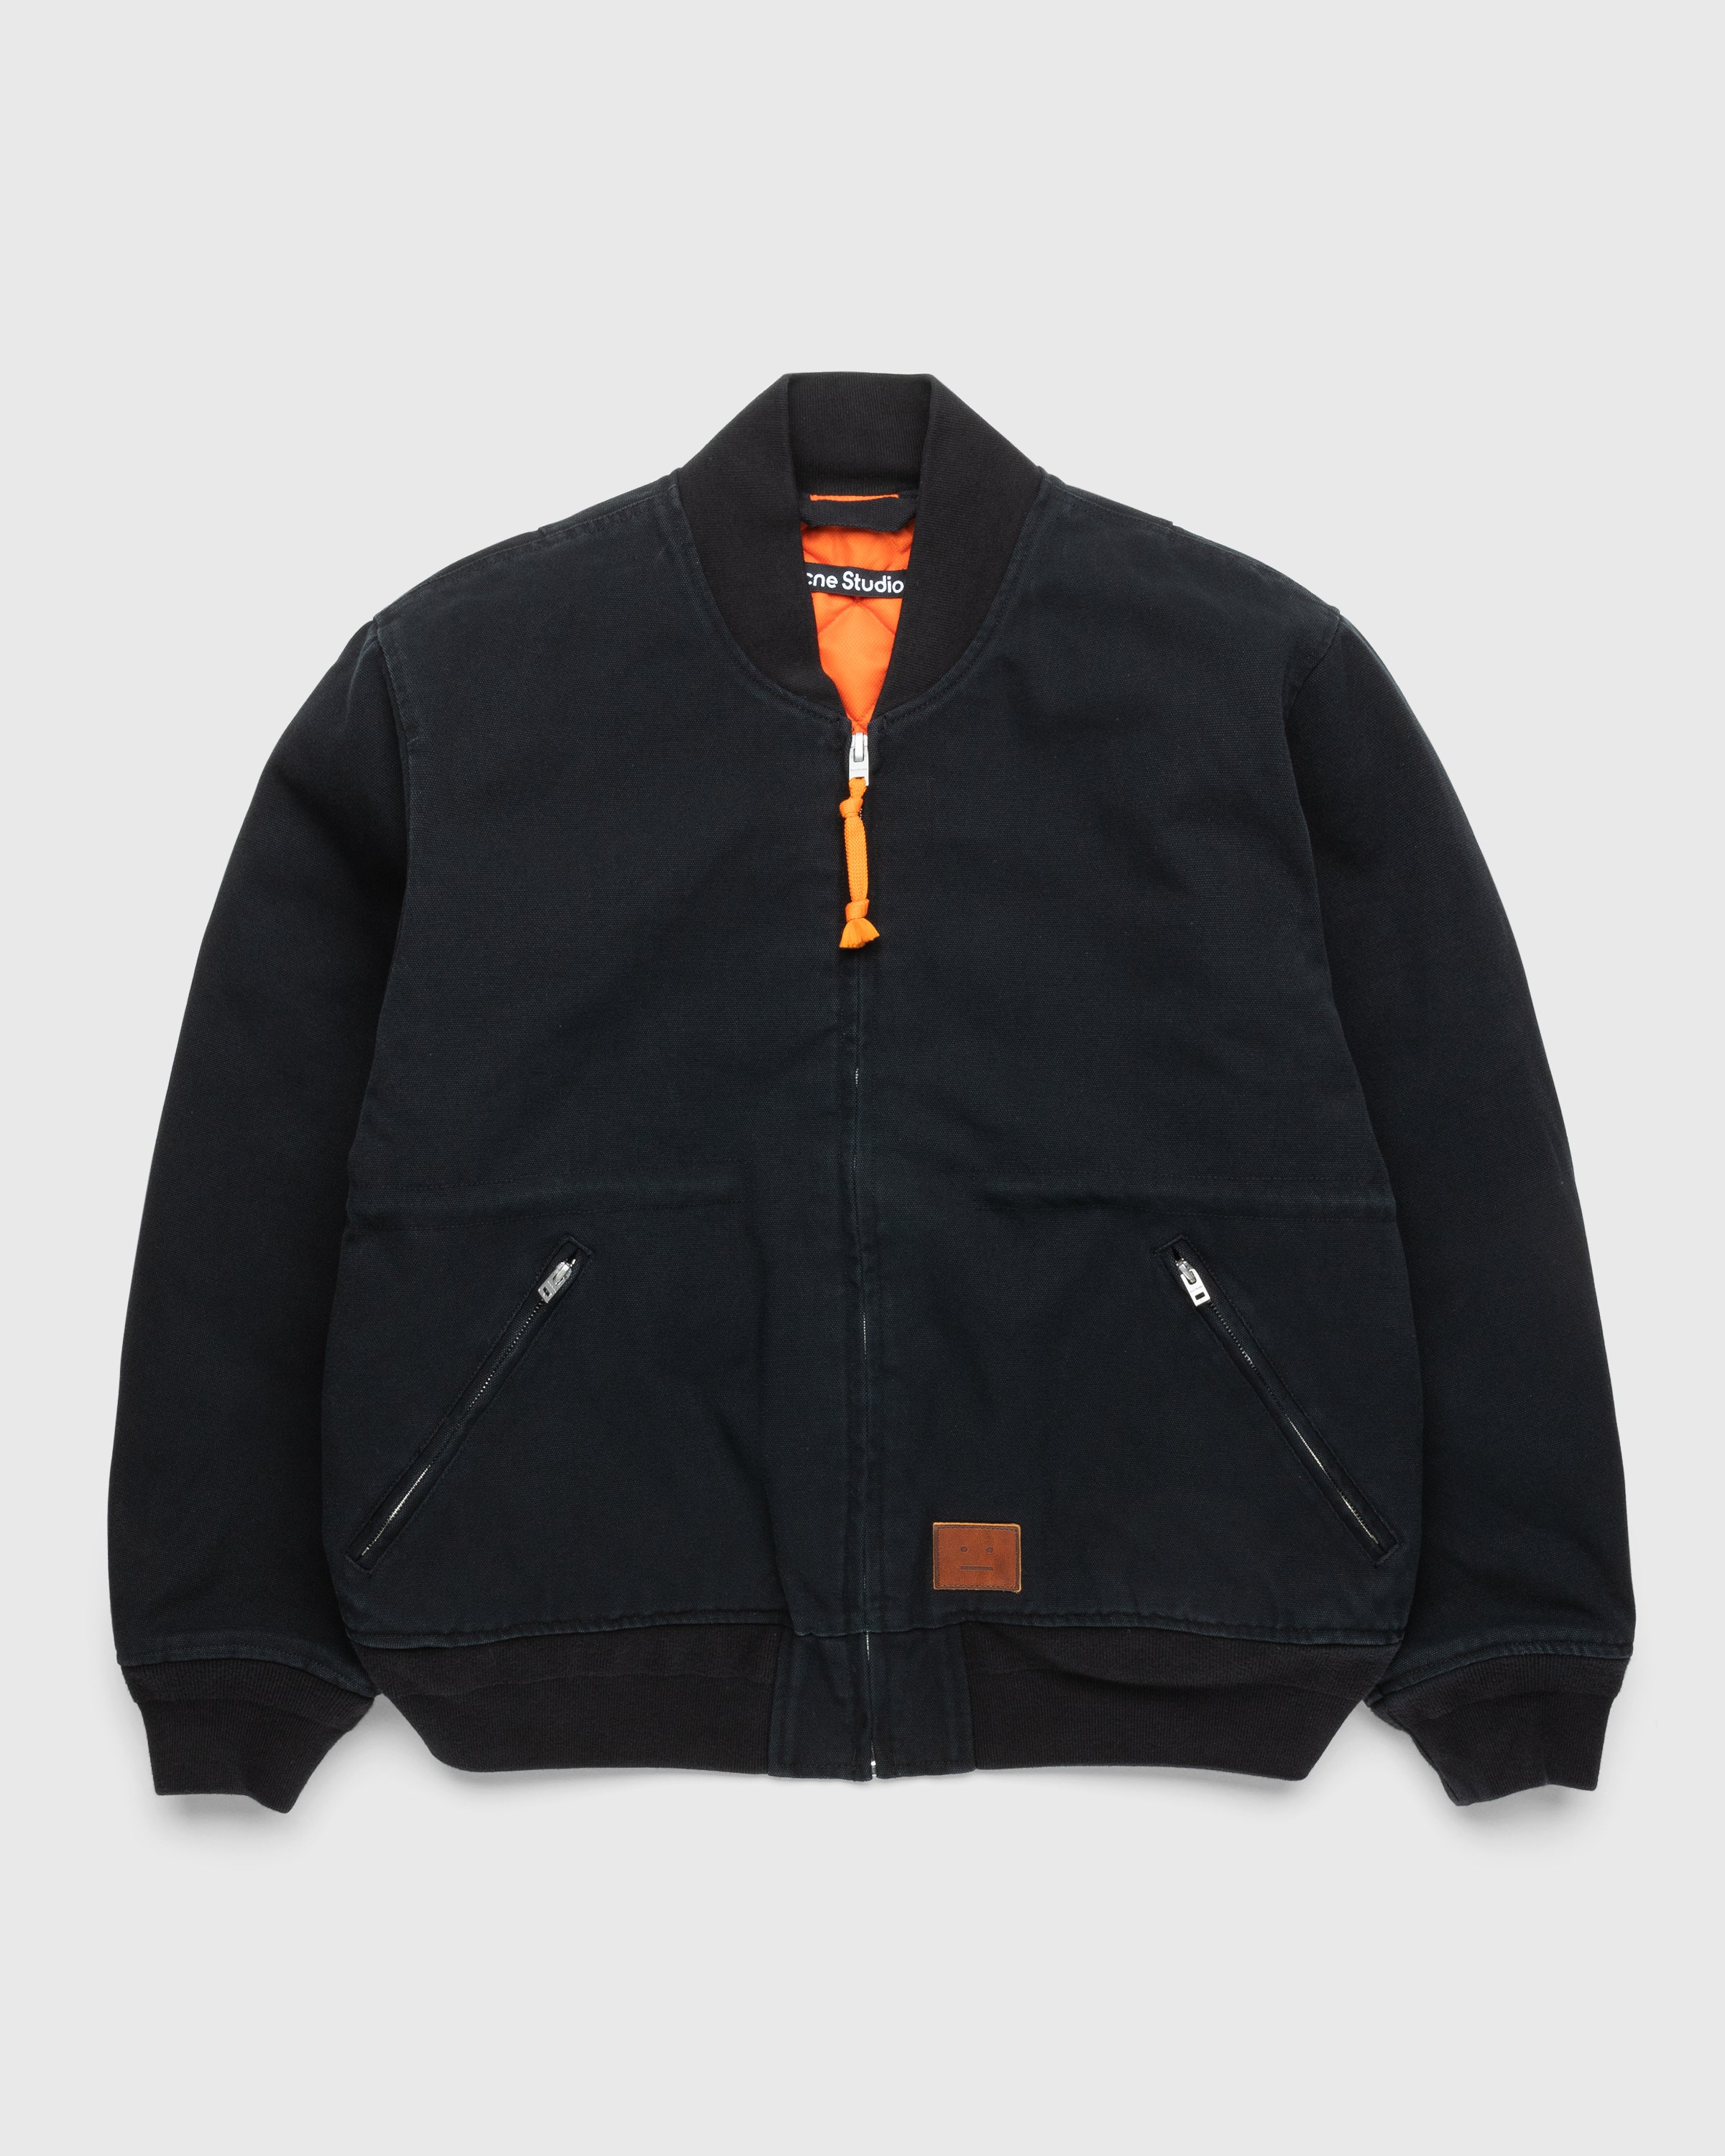 Acne Studios - Organic Cotton Bomber Jacket Black - Clothing - Black - Image 1